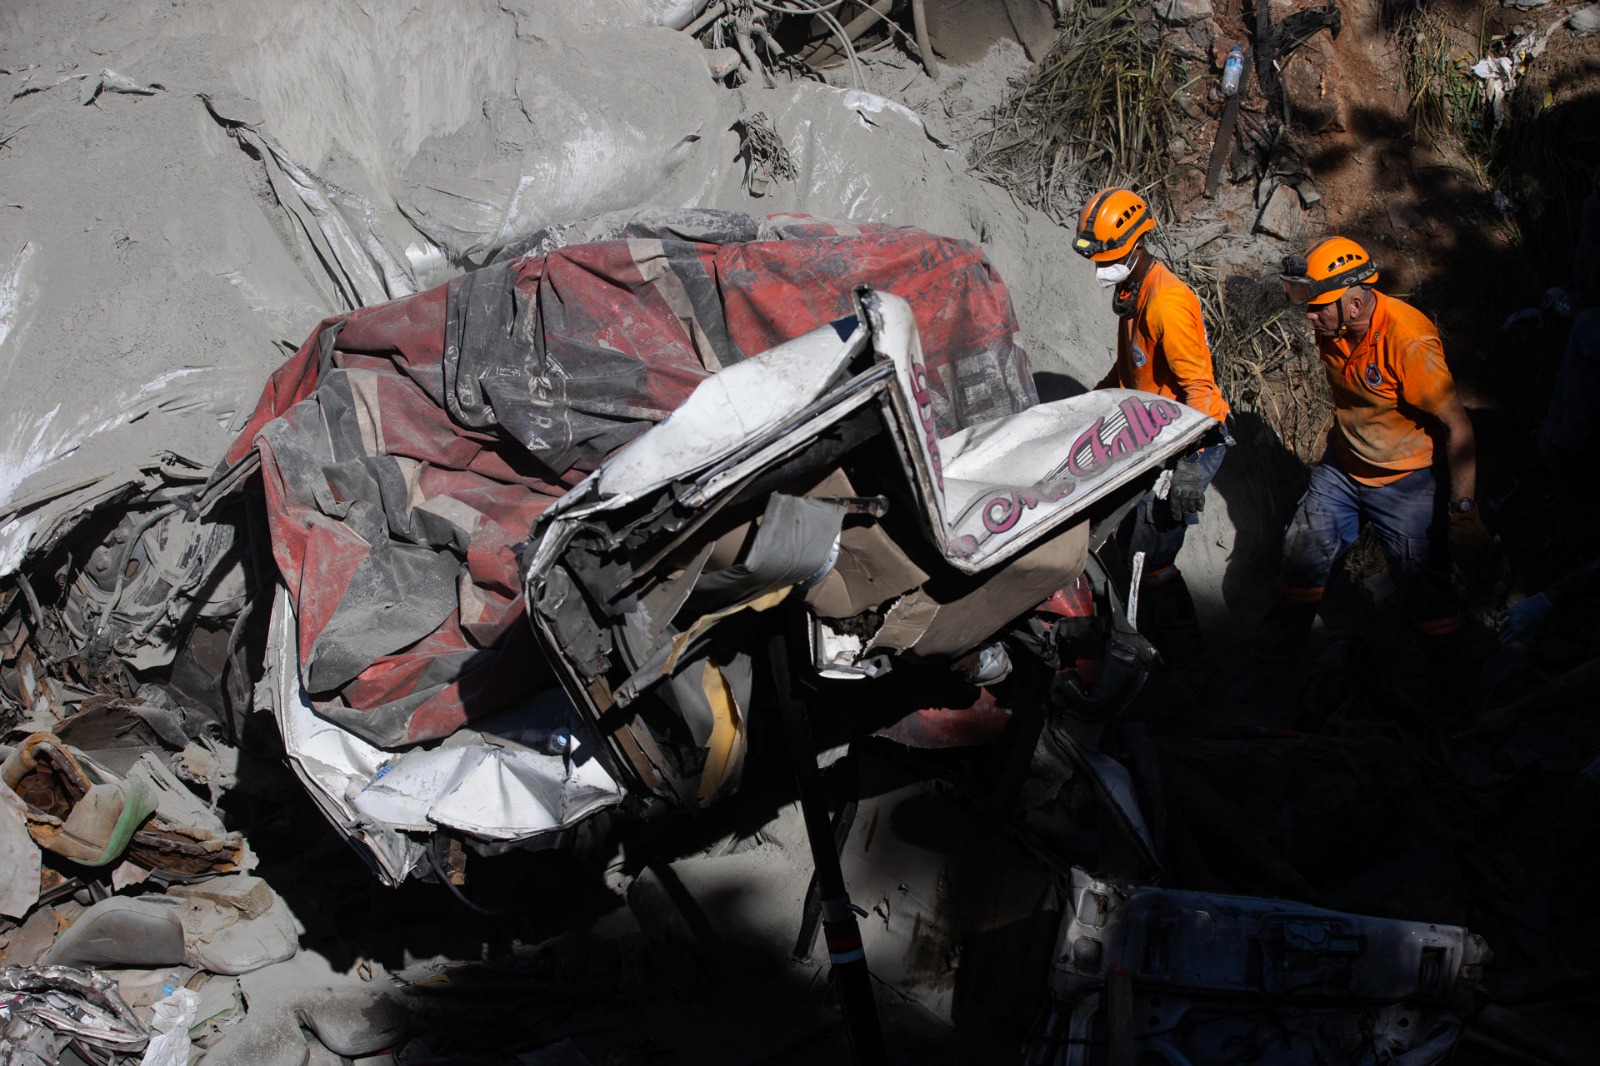 Suman 10 los fallecidos en accidente de Haina tras encontrar otro cadáver